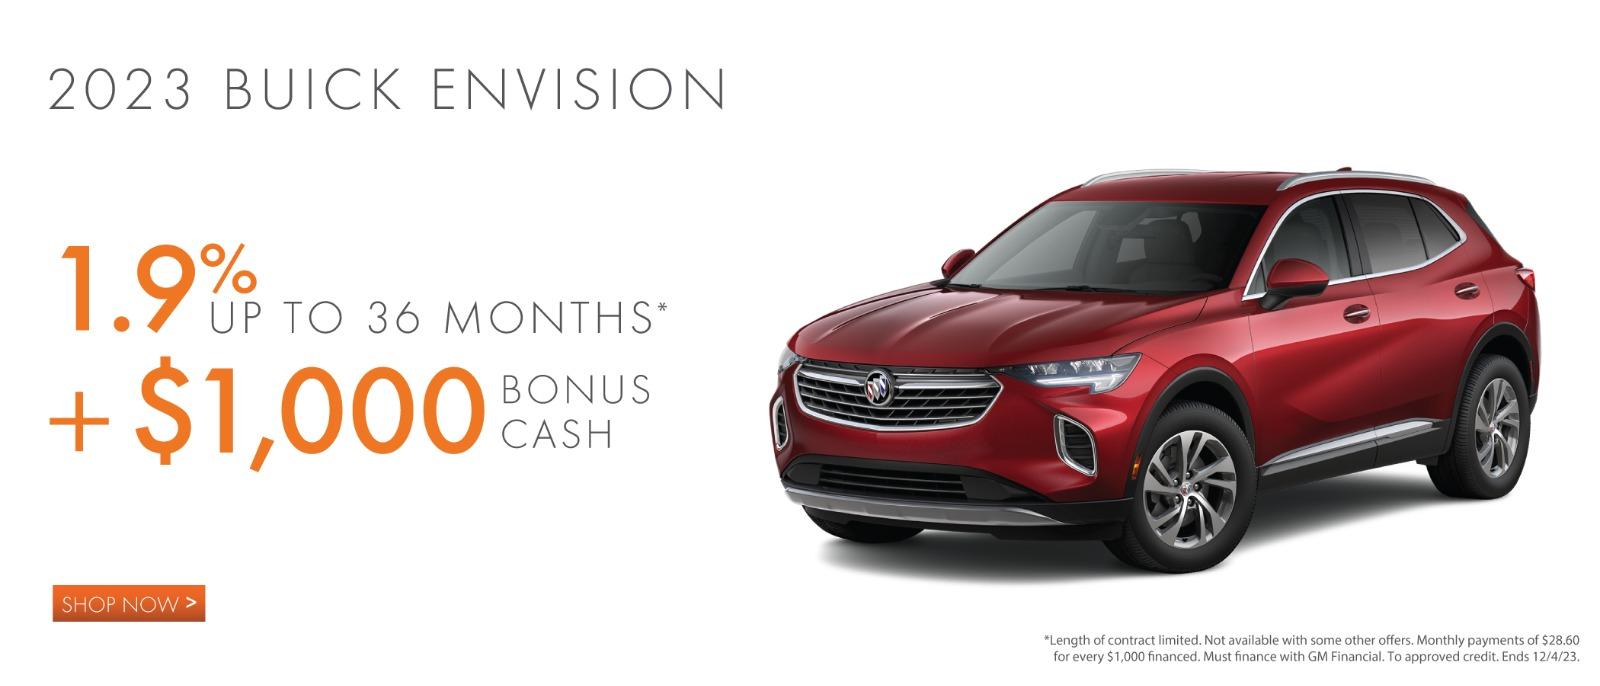 2023 Buick Envision 1.9% up to 36 months plus $1,000 Bonus Cash